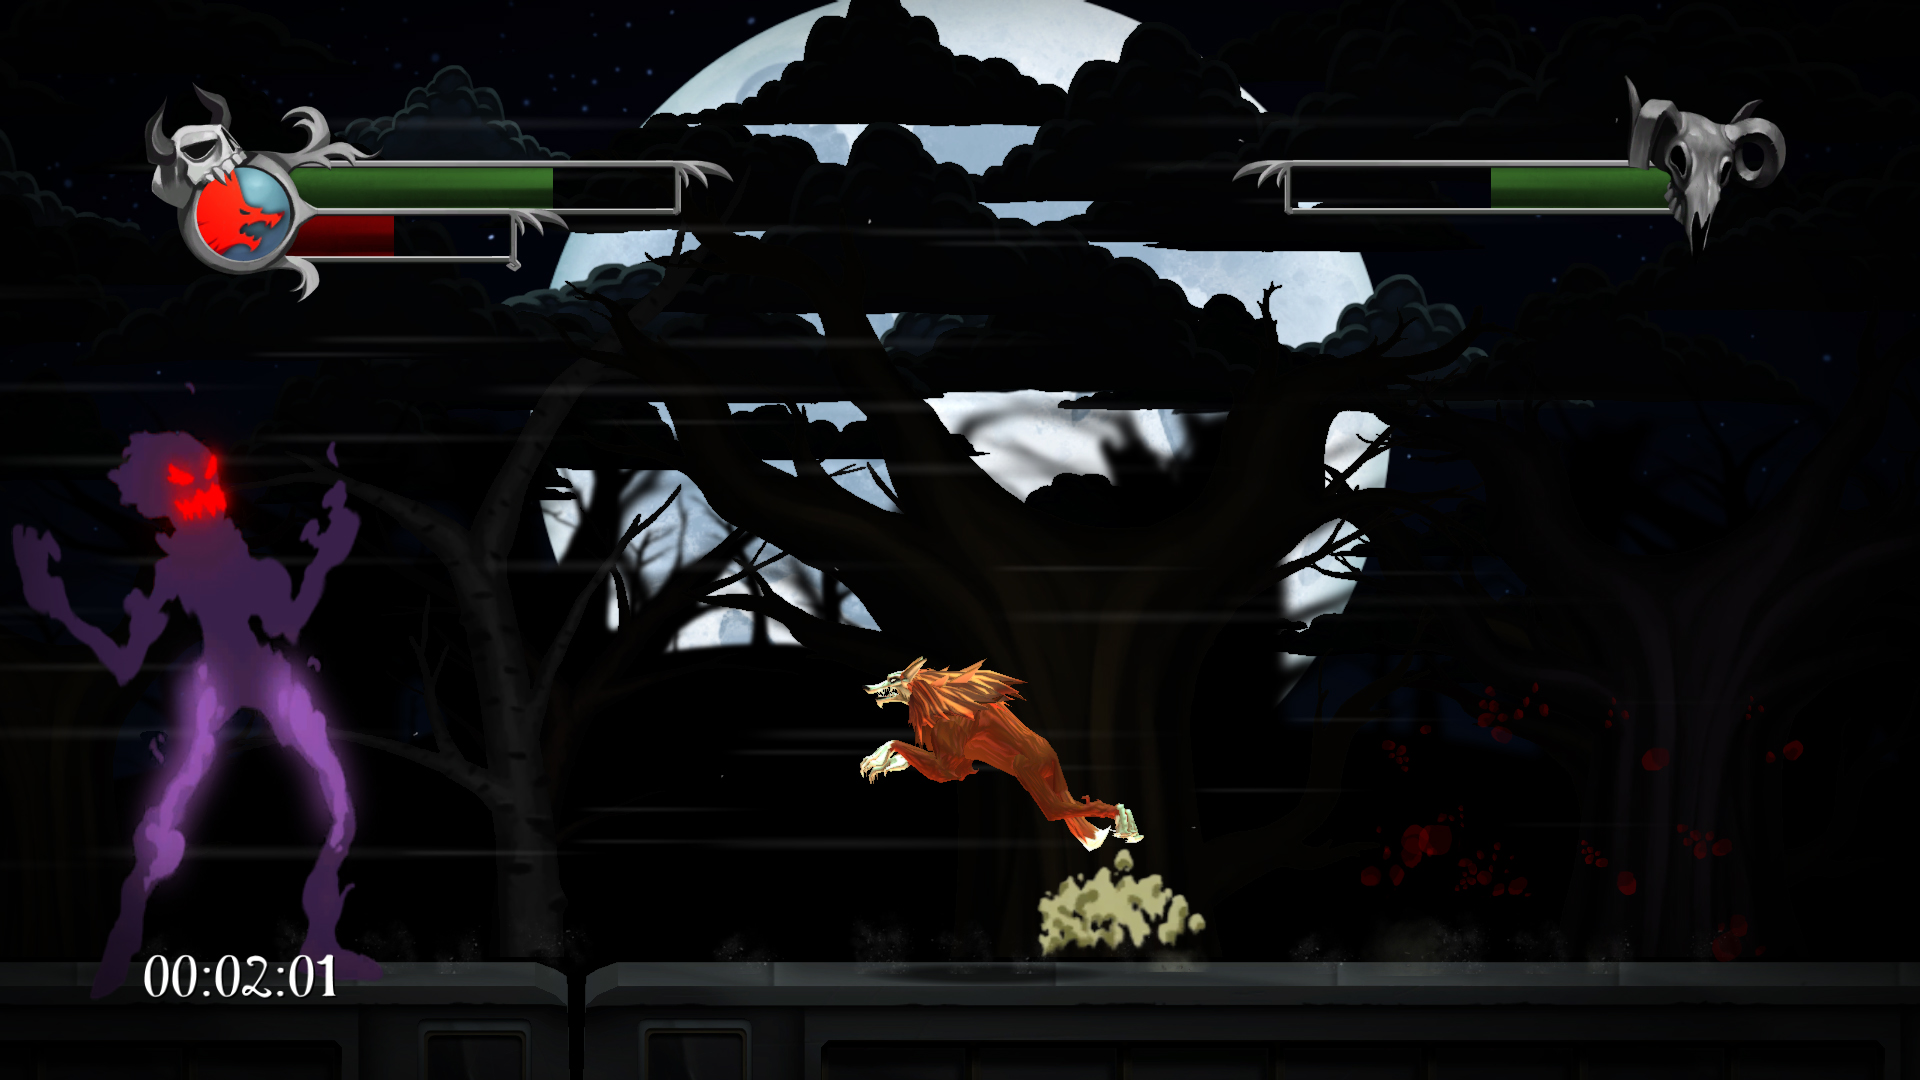 Blood of the Werewolf screenshot